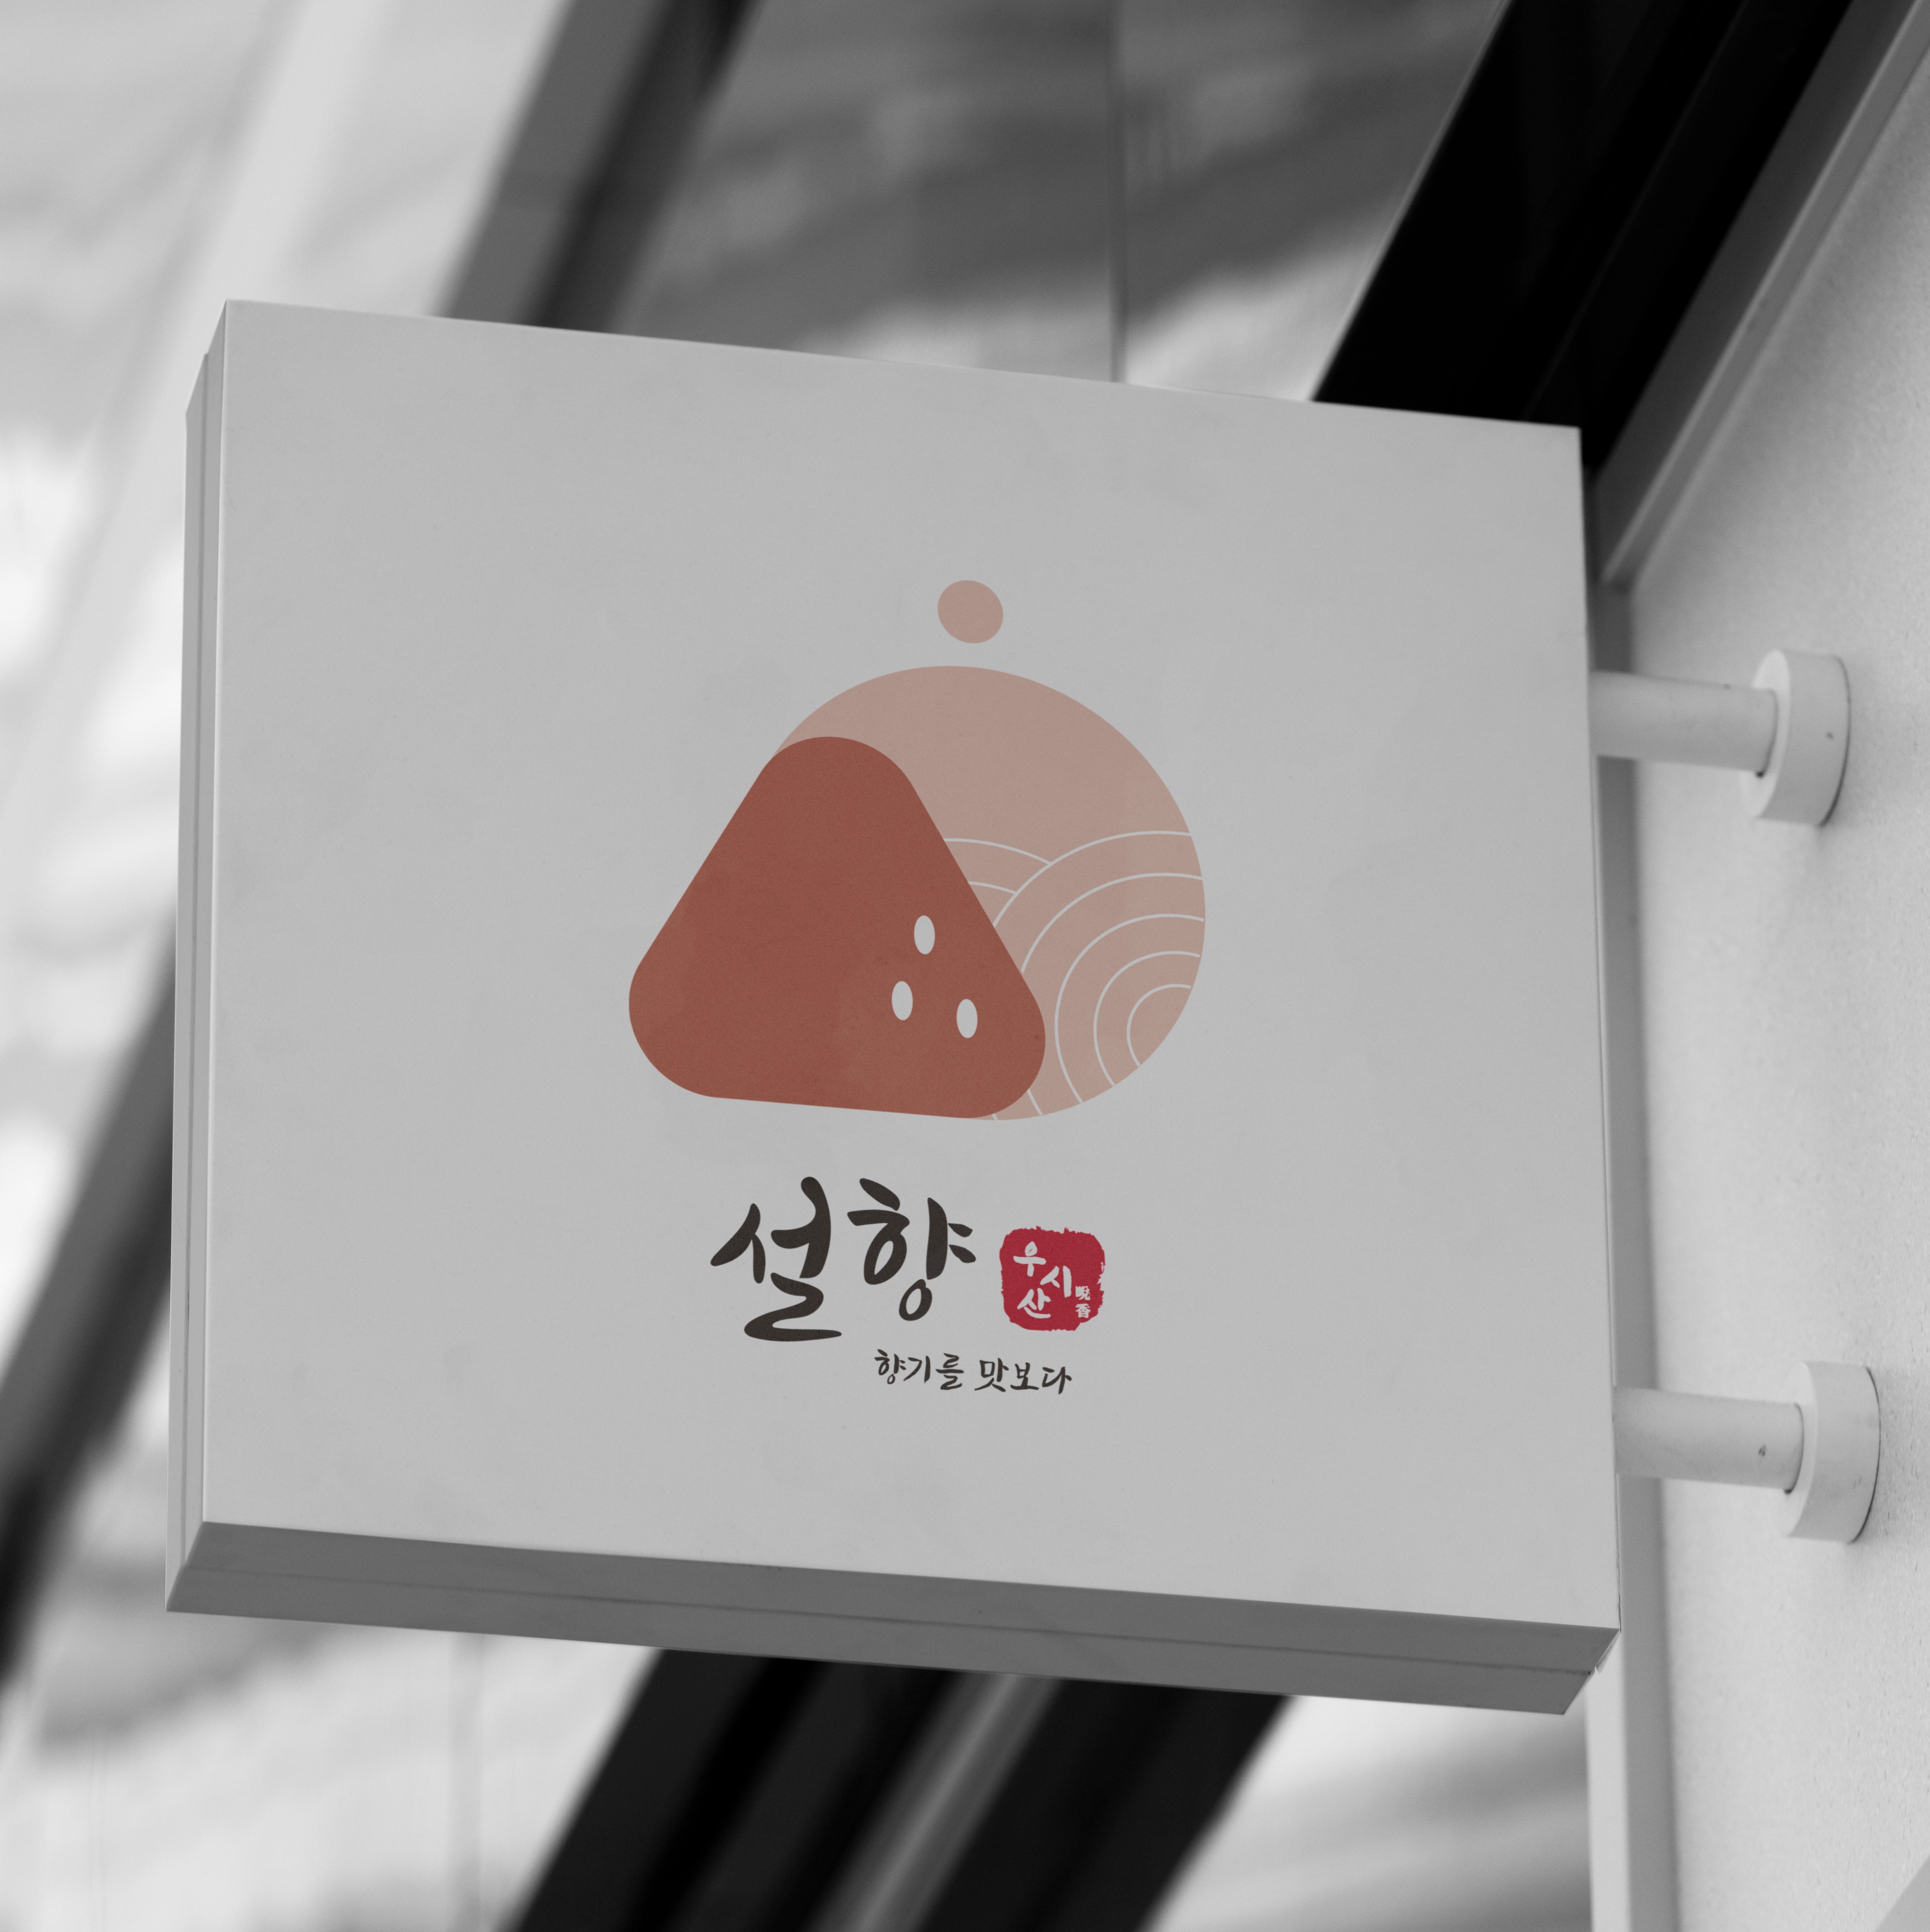 포트폴리오-우리나라 한국적인 모습과 정성이 들어간 딸기체험공간